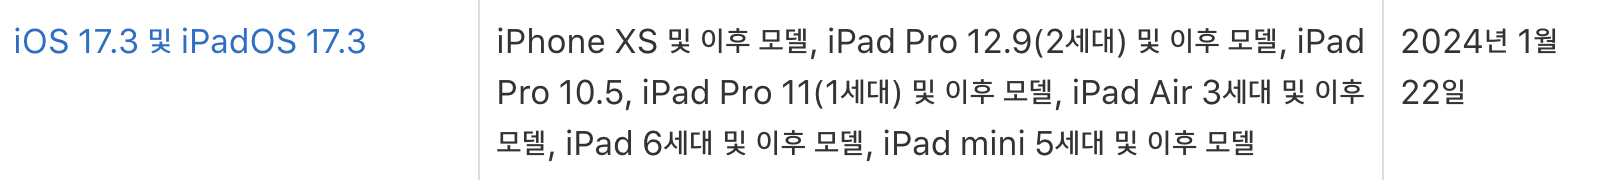 iOS 17.3 iPadOS 17.3 호환 기기